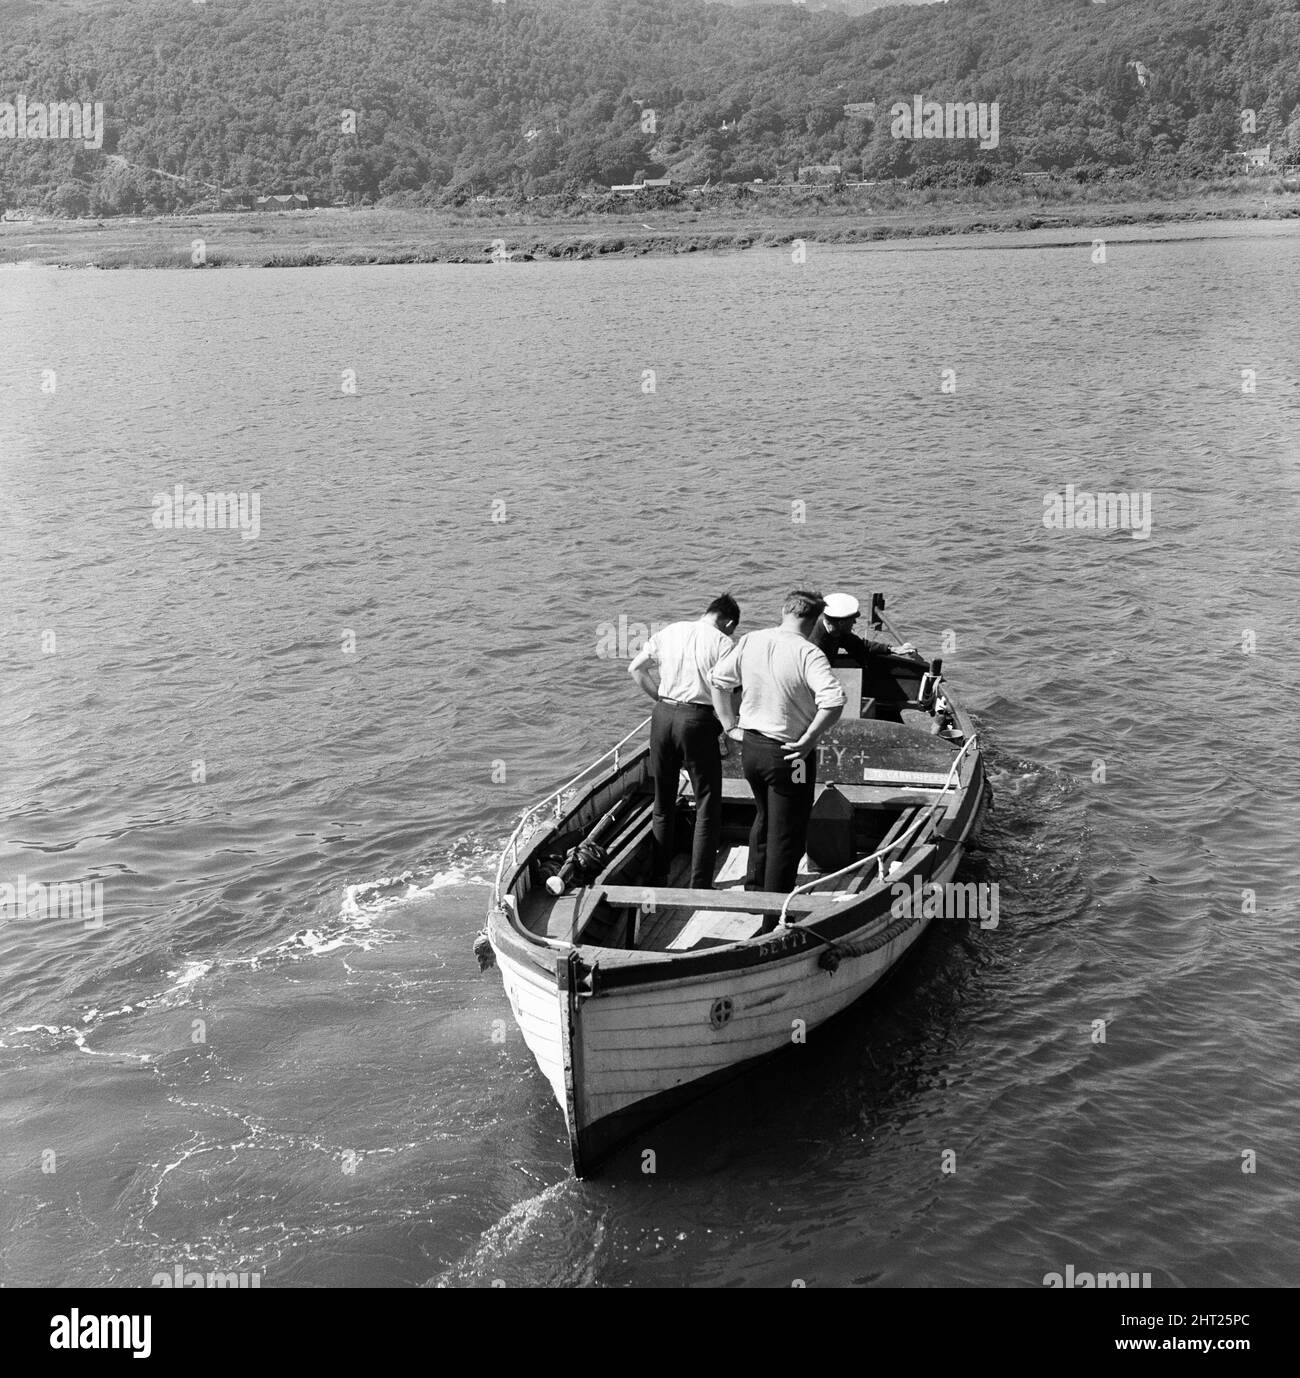 Das Ausflugsboot Prince of Wales kenterte und kippte seine 39 Passagiere am 22.. Juli 1966 in die Mawddach-Mündung in Penmaenpool, Merioneth, Nordwales. Der Ausflug am Sommernachmittag wurde zu einem plötzlichen Überlebenskampf, als das Boot eine U-Drehung in Richtung eines Landungssteg machte. Der Prinz von Wales wurde gegen eine Mautbrücke gefegt. Ein Loch wurde im Boot gerissen und es sank in drei Minuten. Das führte zu 15 Todesfällen, darunter 4 Kinder. Im Bild, die Polizei sucht nach Überlebenden. 23.. Juli 1966. Stockfoto